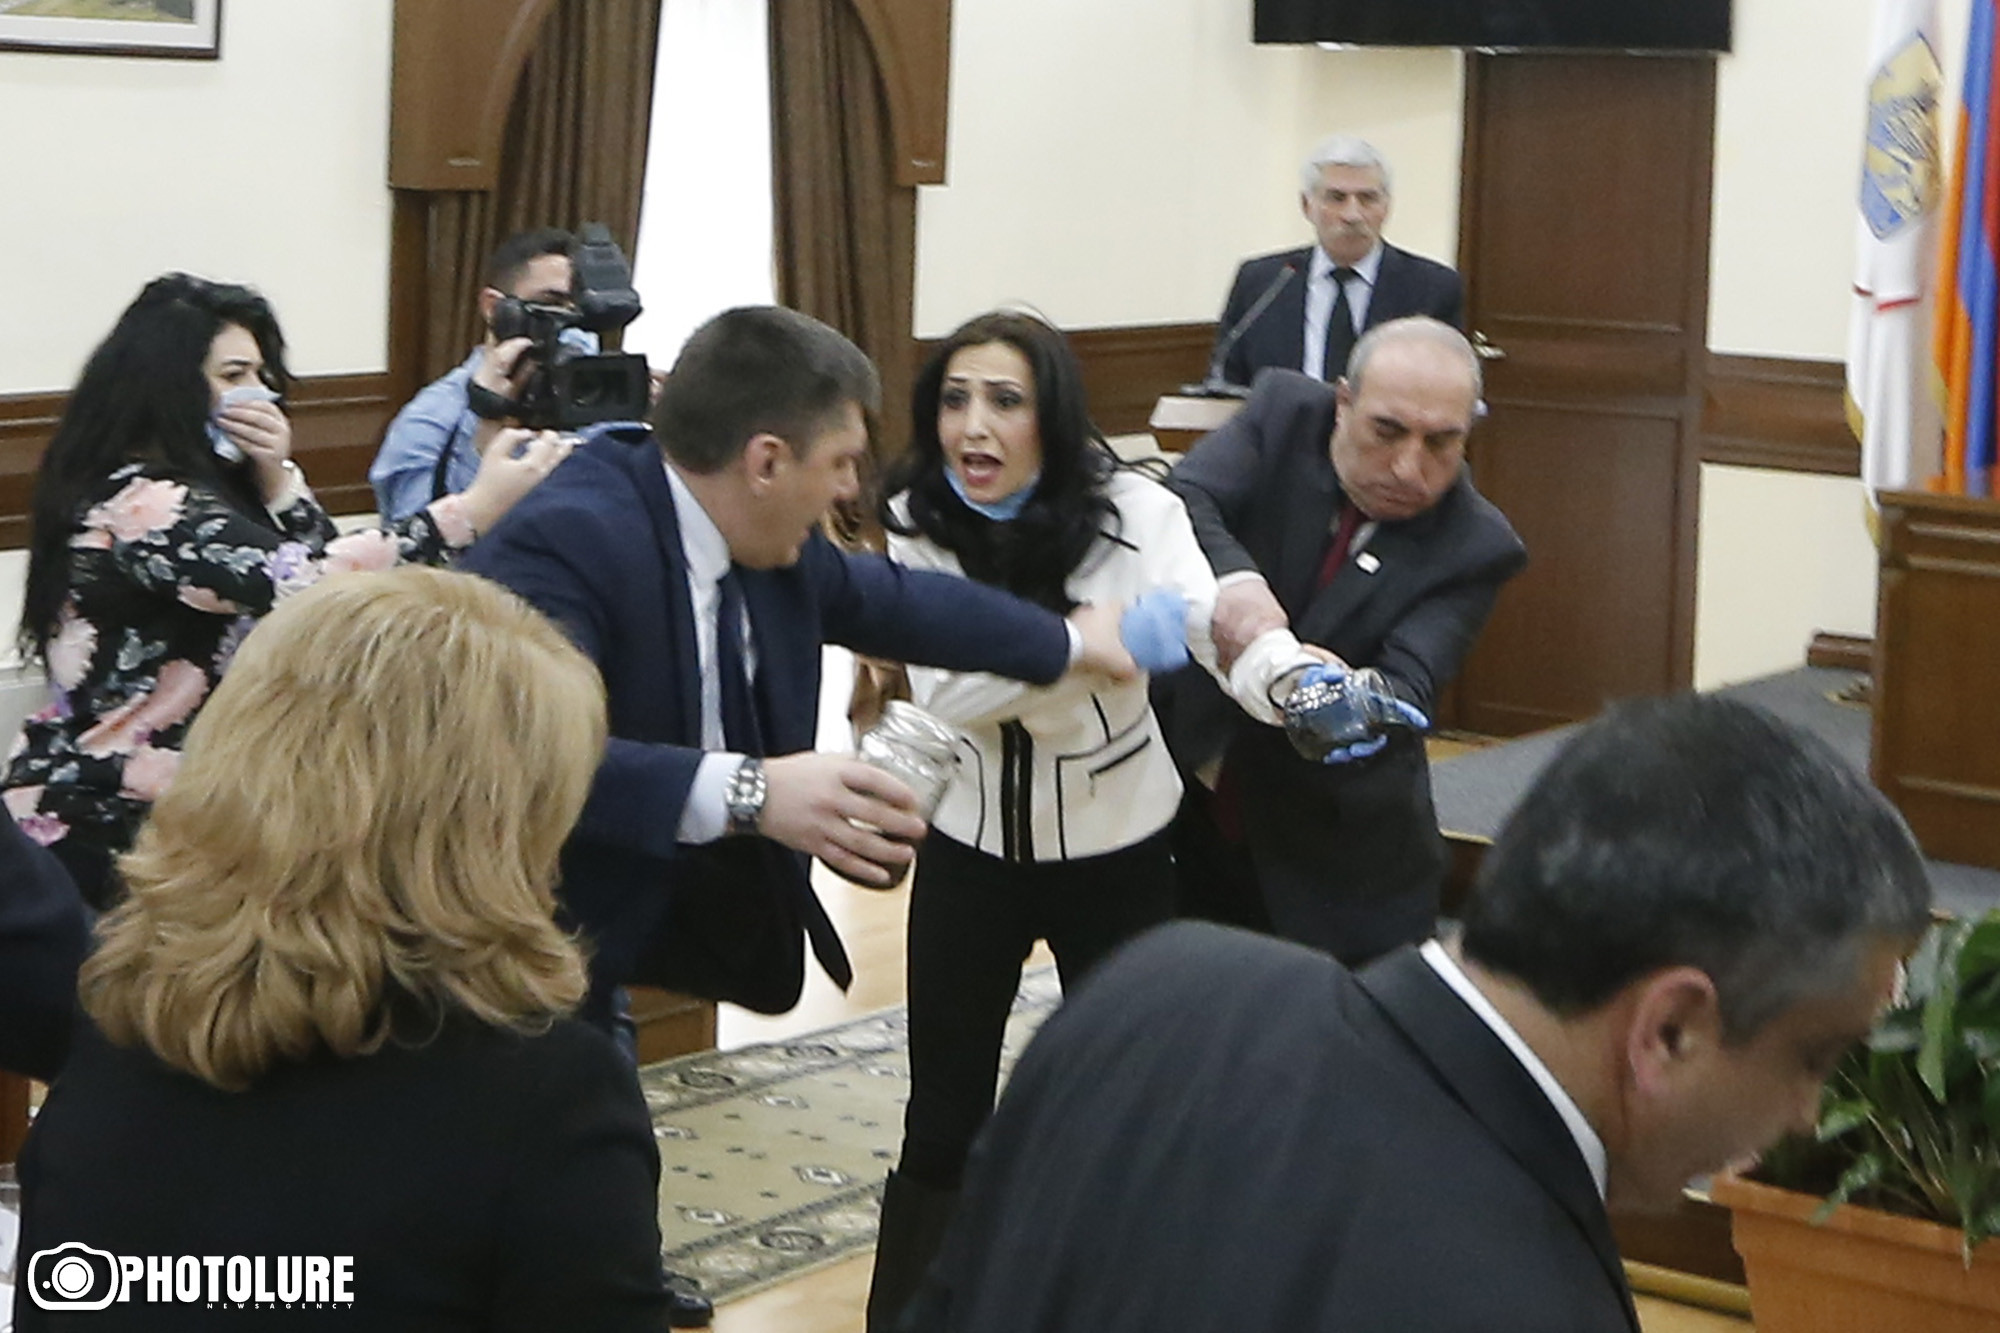 Մամուլ. ՀՀԿ-ում խիստ զայրացած են քաղաքապետ Տարոն Մարգարյանի վրա